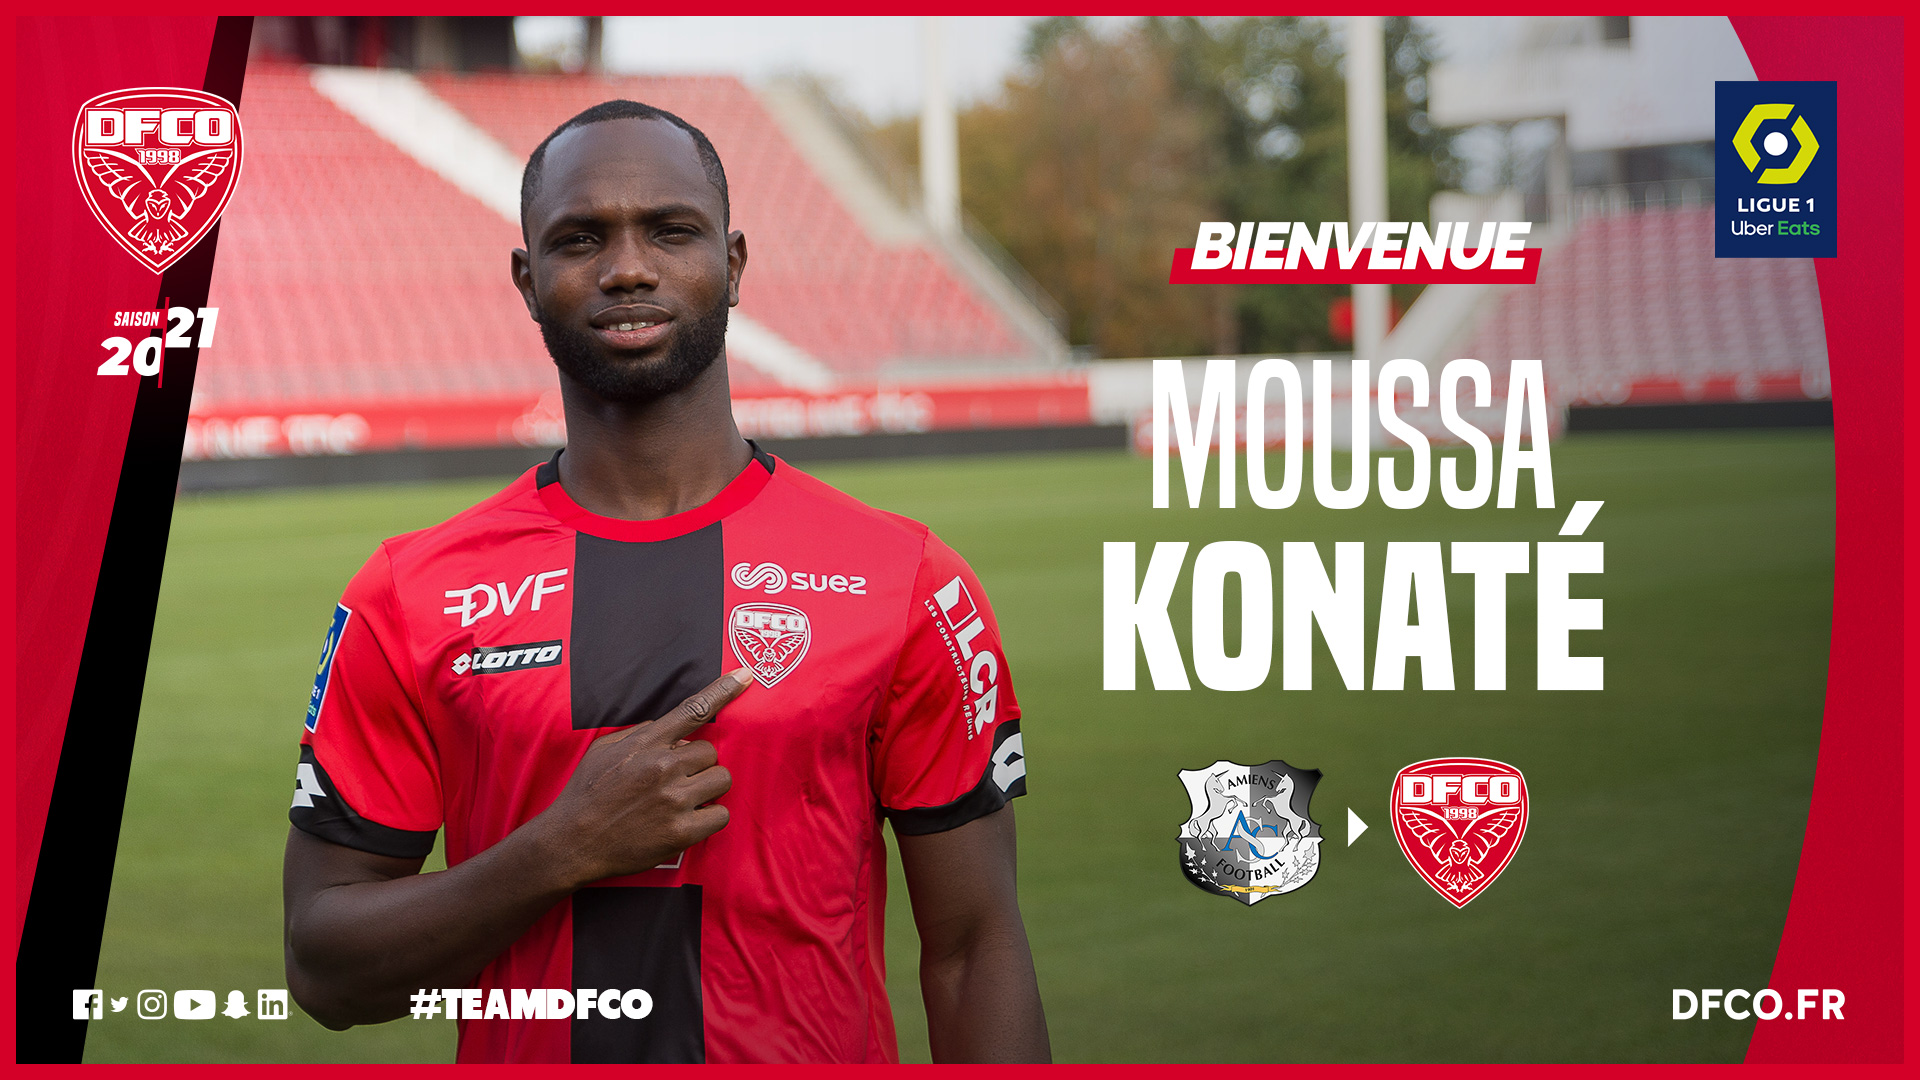 Officiel ! Moussa Konaté signe à Dijon